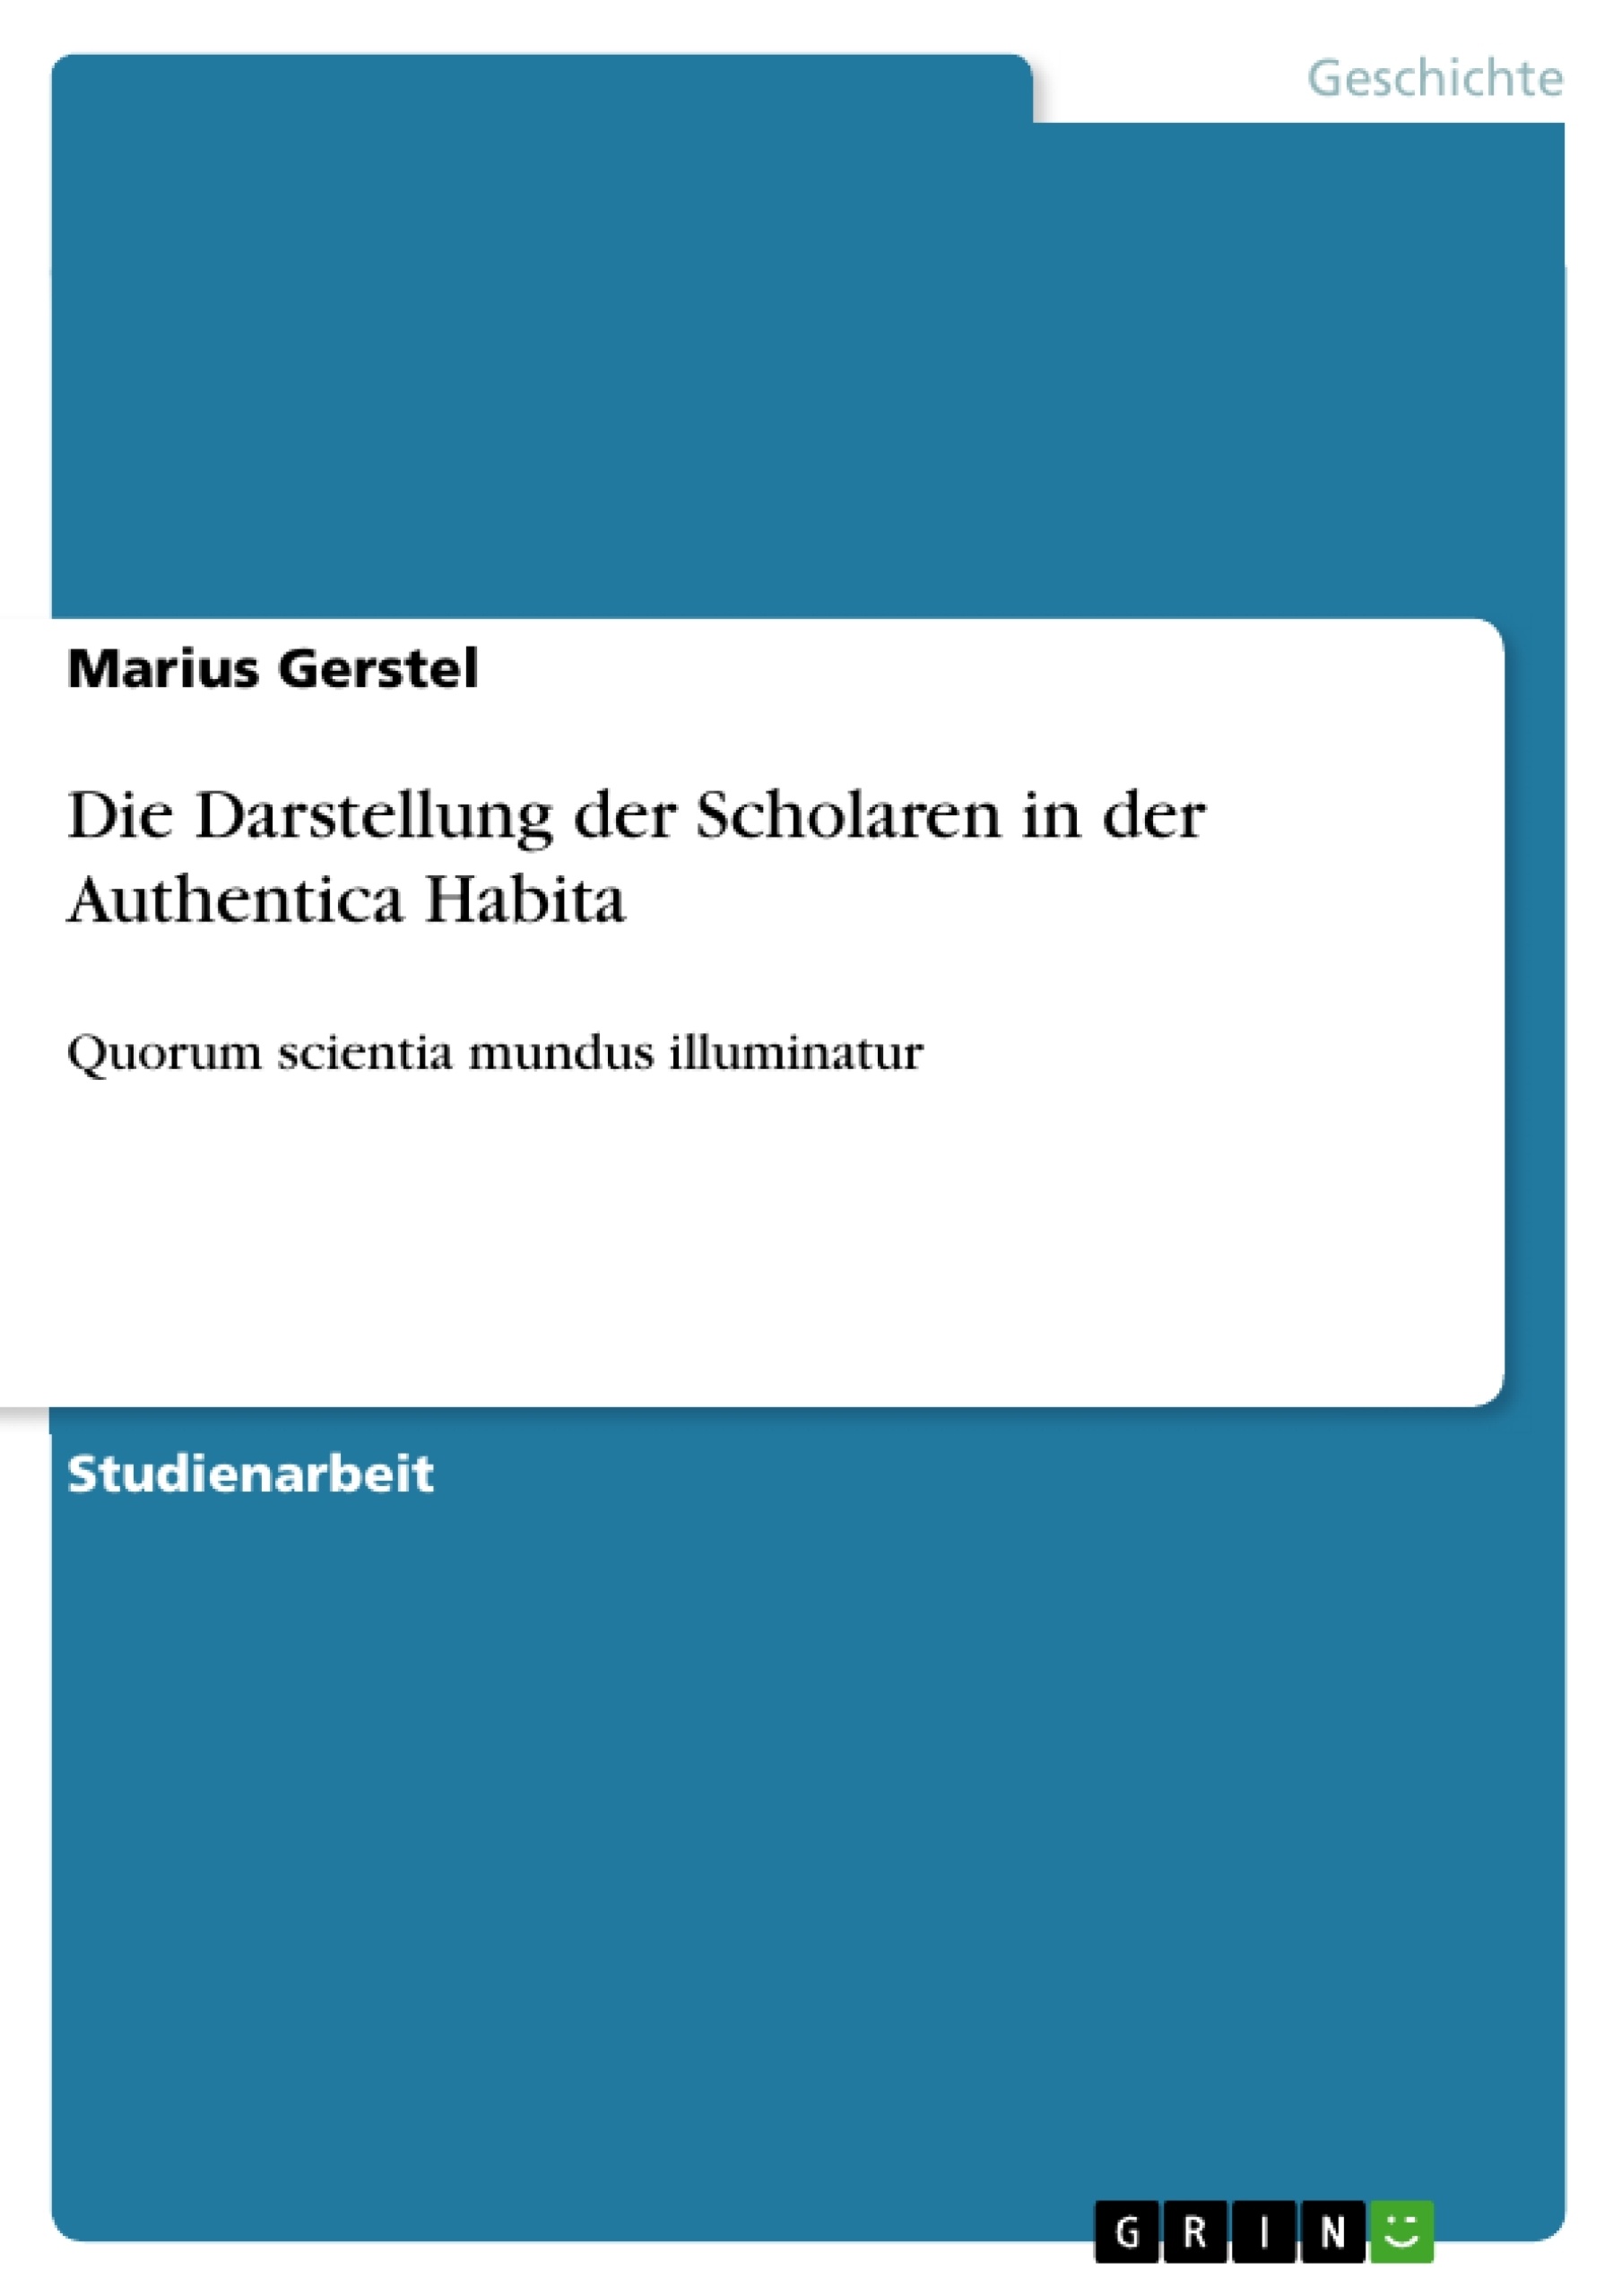 Titel: Die Darstellung der Scholaren in der Authentica Habita